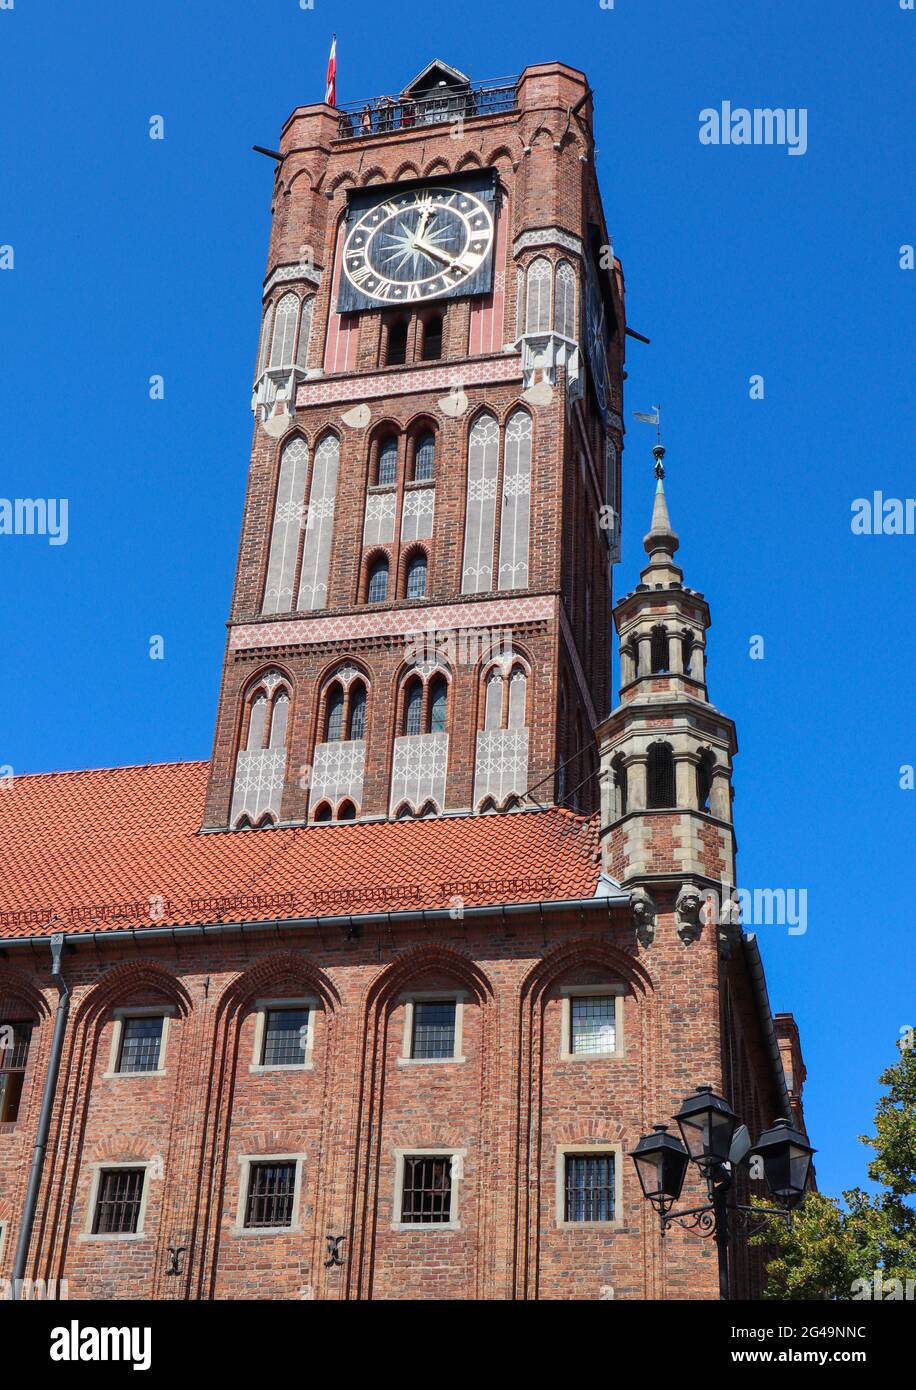 Turm des Alten Rathauses (ratusz Staromiejski) in Torun, Polen. August 2019 Stockfoto